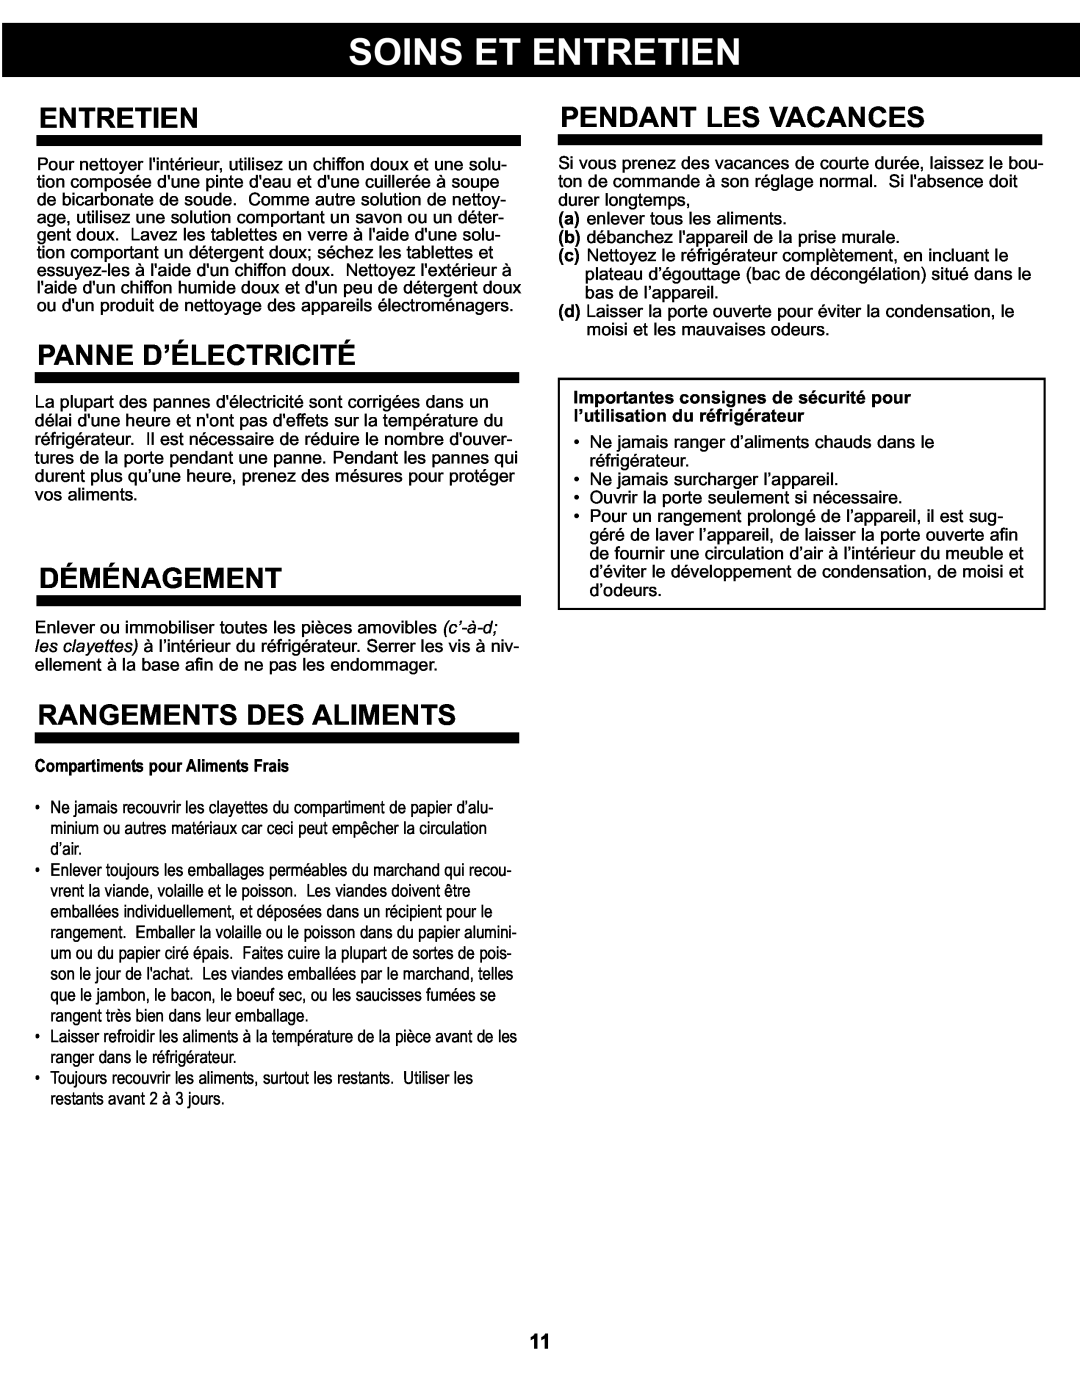 Danby DCR044A2BDD manual Entretien, Pendant Les Vacances, Panne D’Électricité, Déménagement, Rangements Des Aliments 